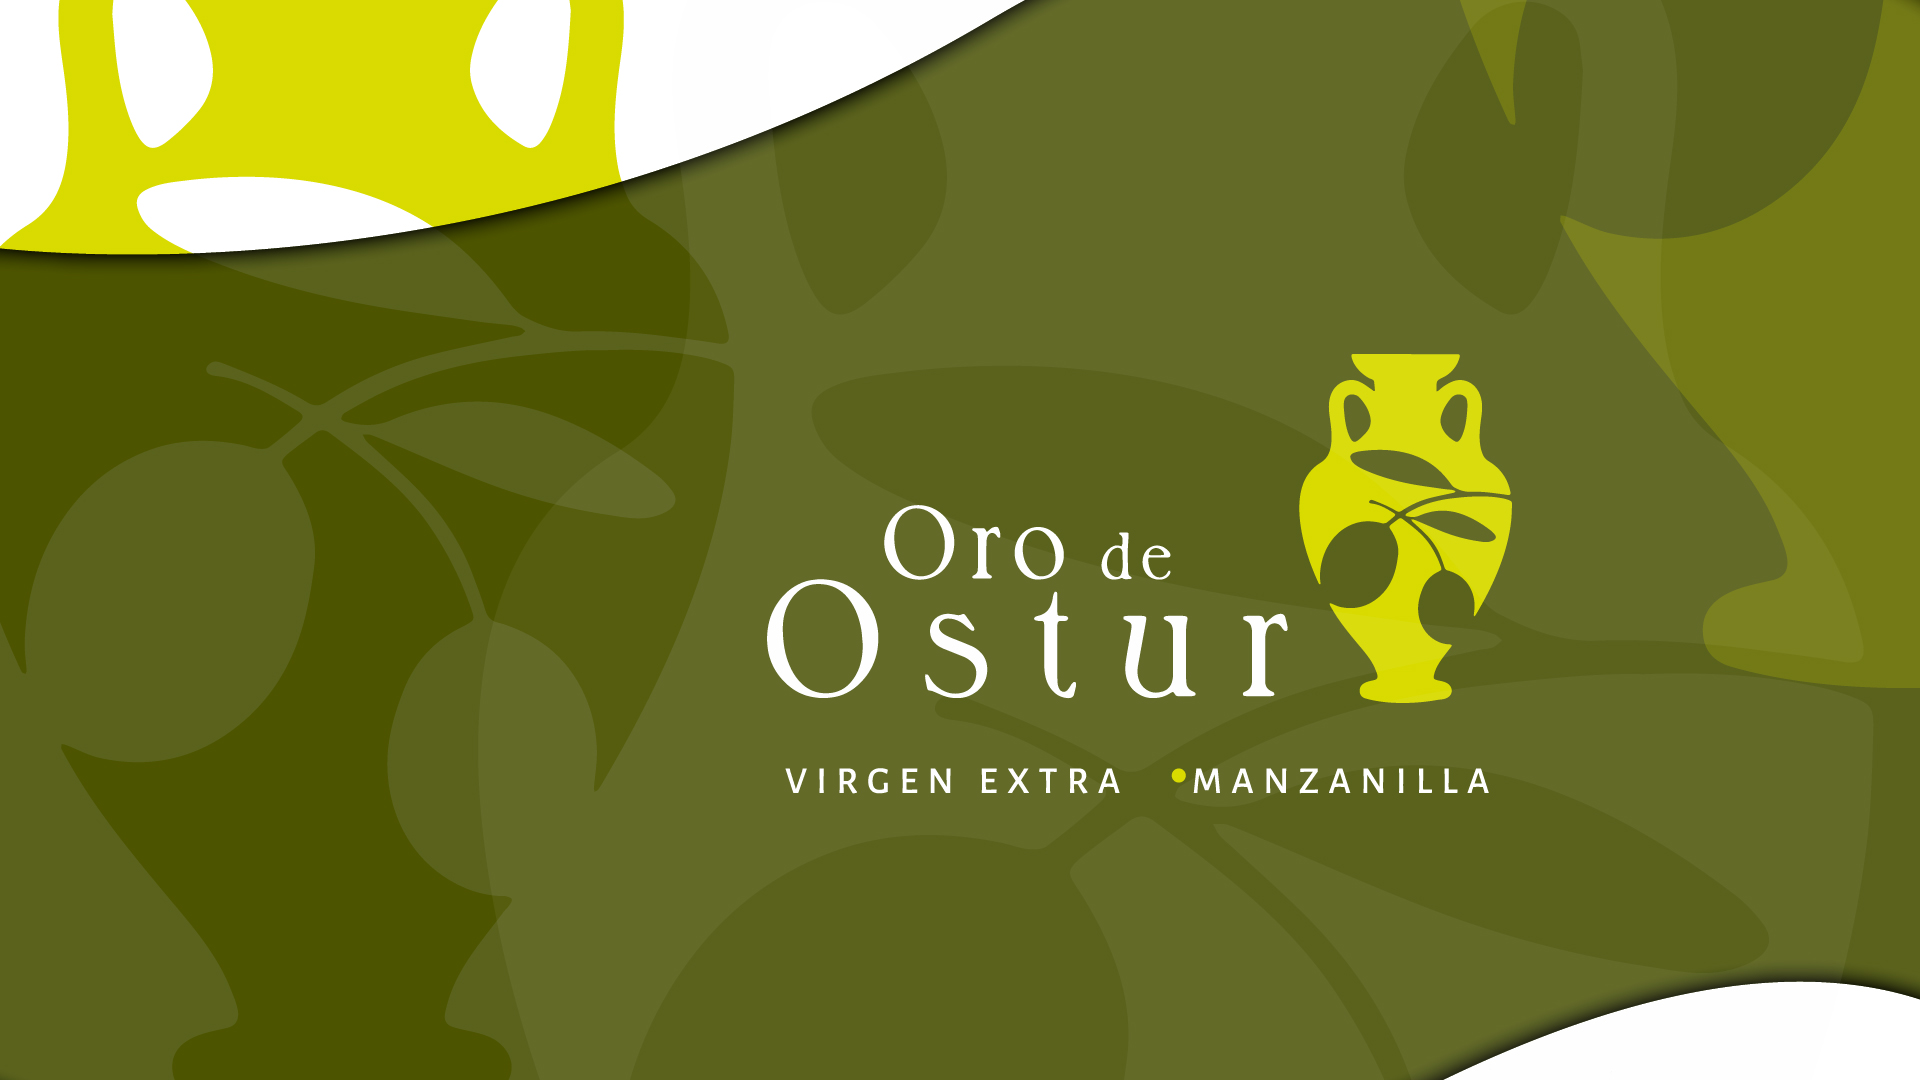 Diseño gráfico y creativo de etiquetas de aceite de oliva virgen extra para ORO DE OSTUR